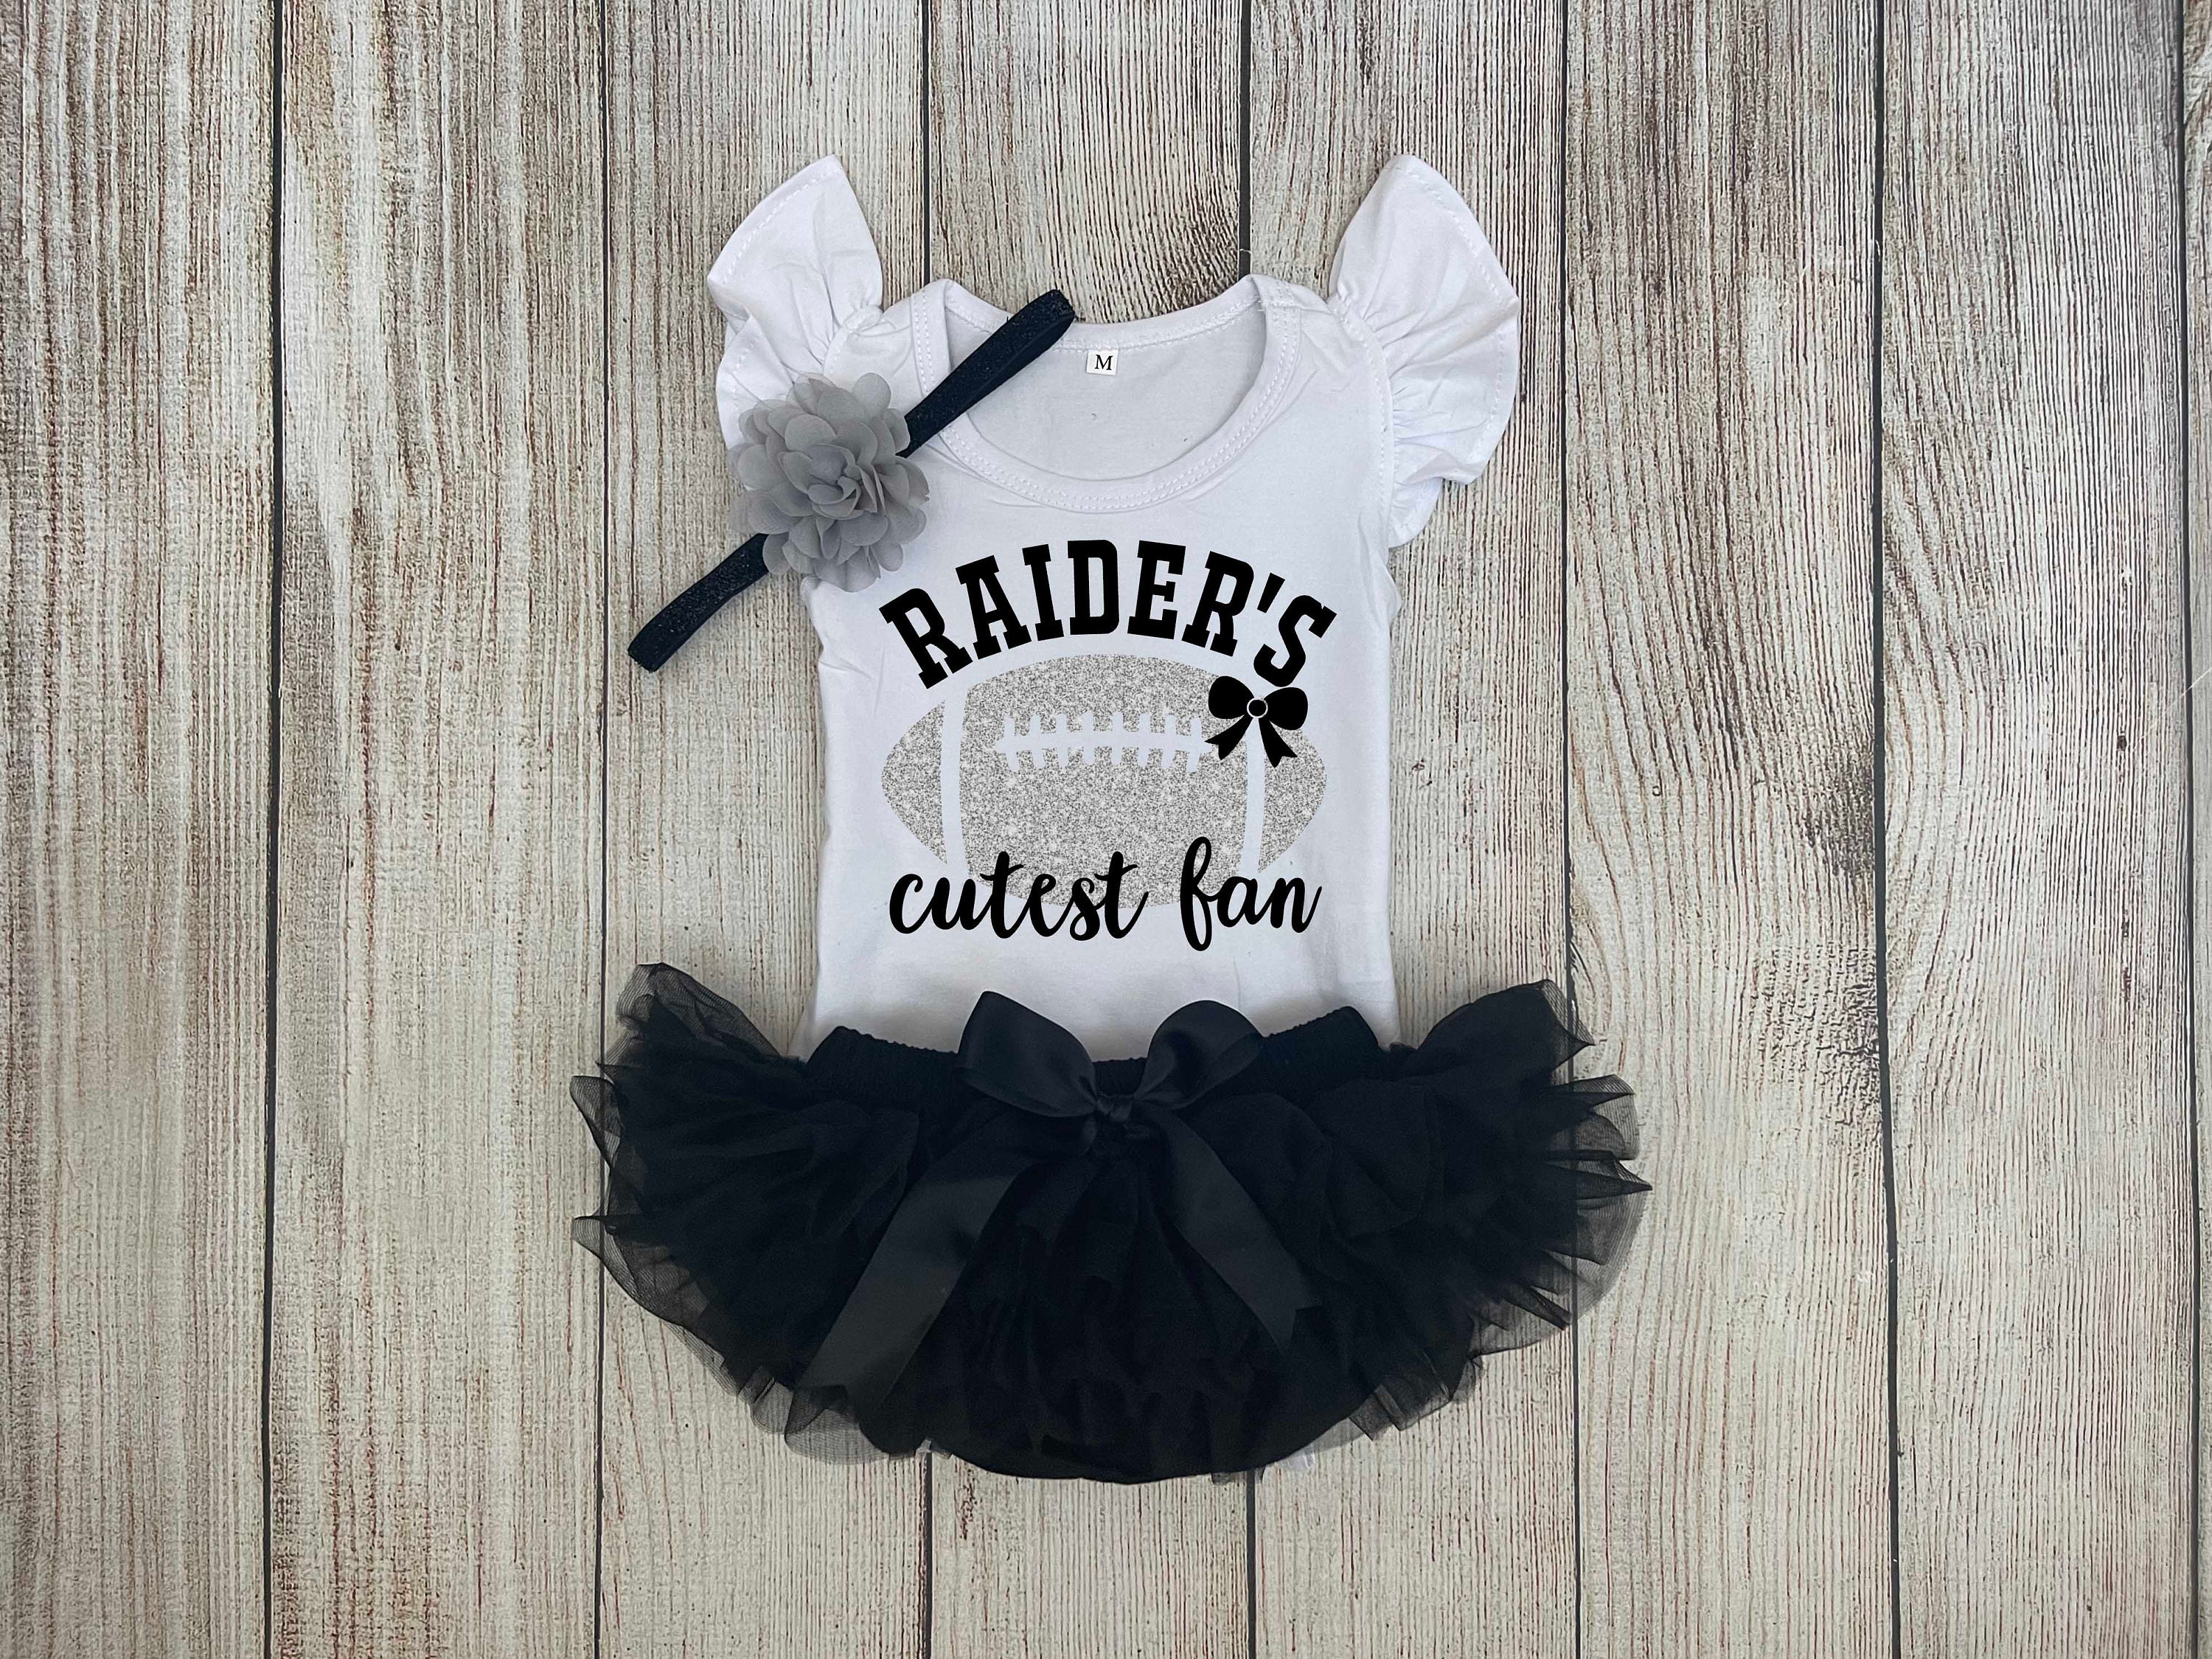 Raiders baby/newborn clothes girl Raiders baby gift Las vegas football baby  girl